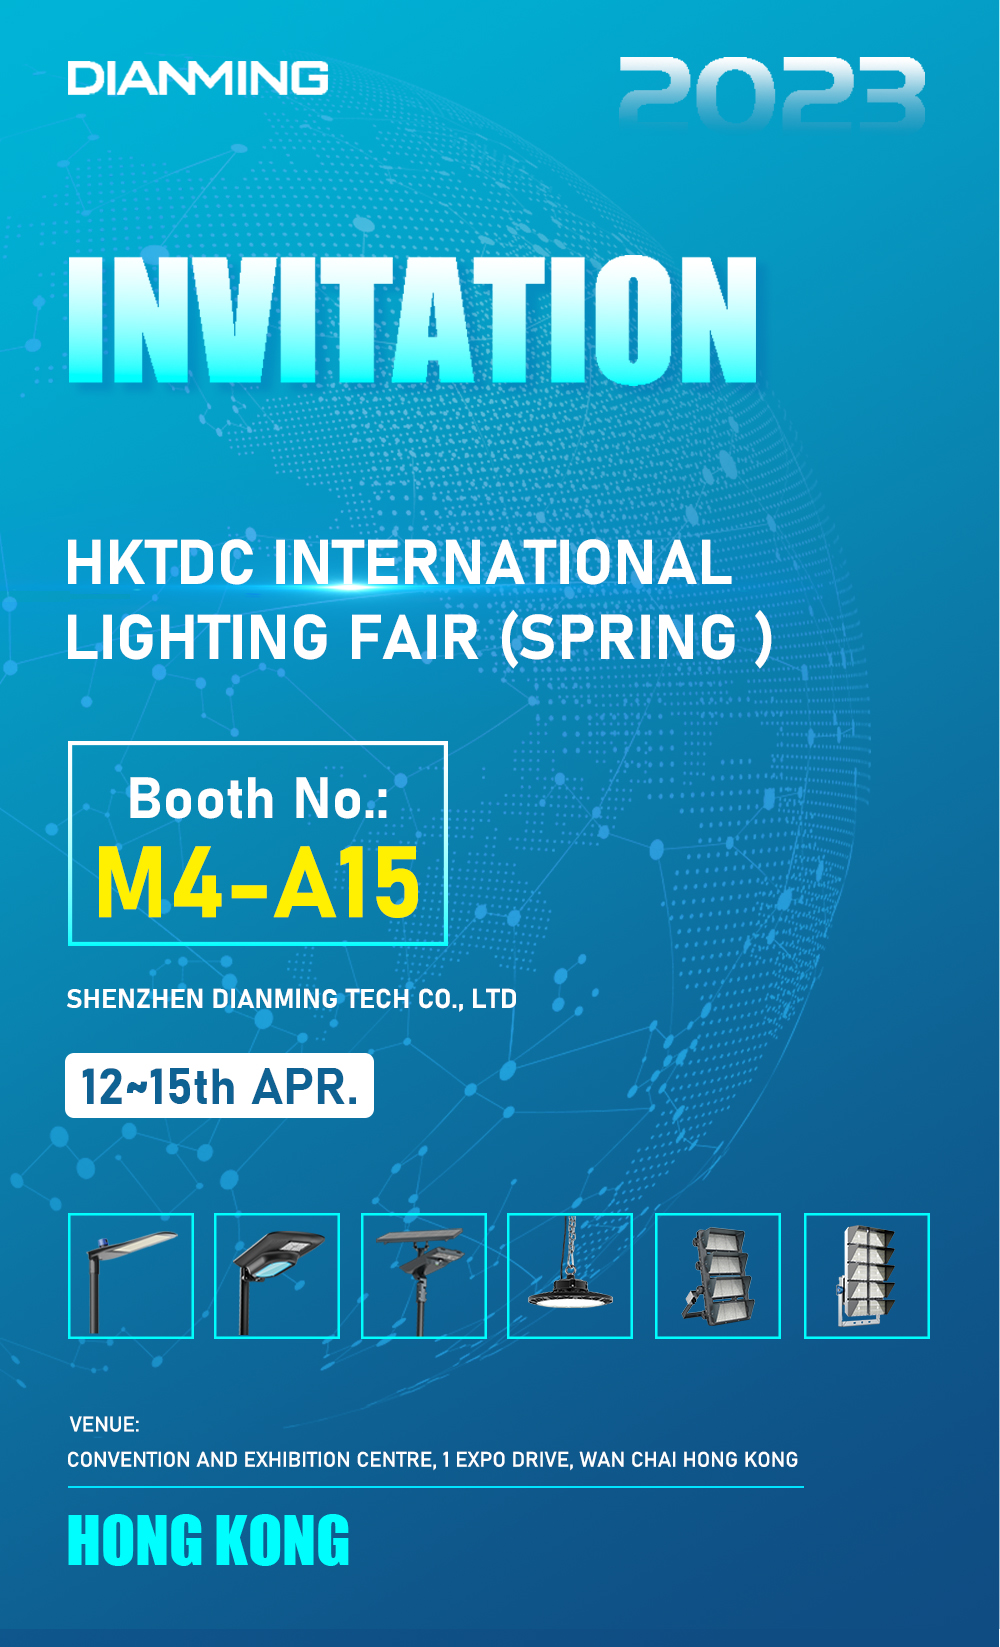 DIANMING-HKTDC INTERNATIONAL LIGHTING FAIR(SPRING)